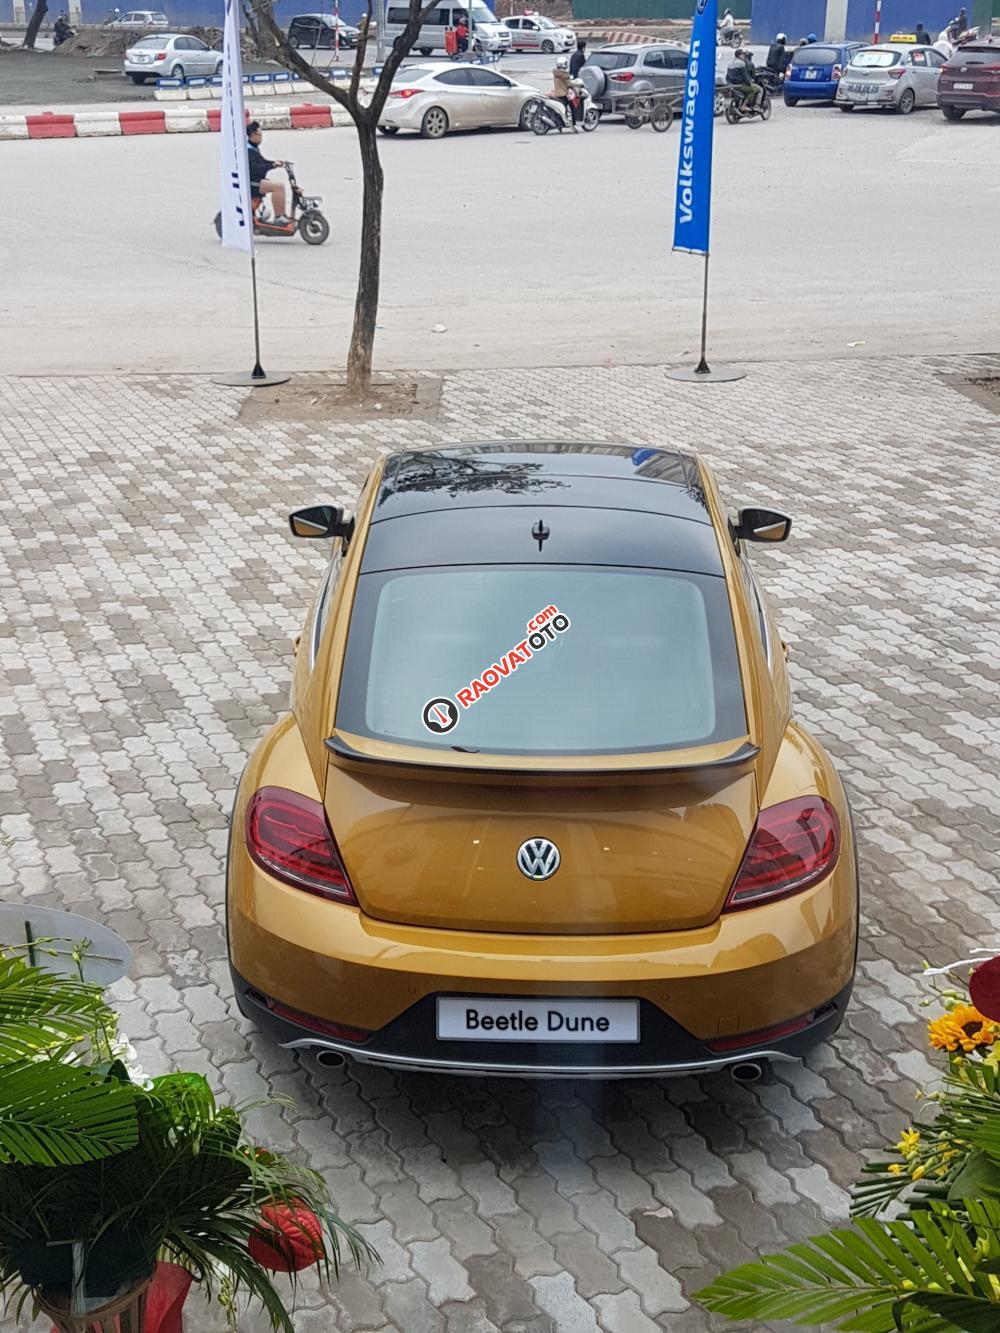 Bán Volkswagen Beetle Dune huyền thoại, mầu vàng duy nhất mới về VN-7